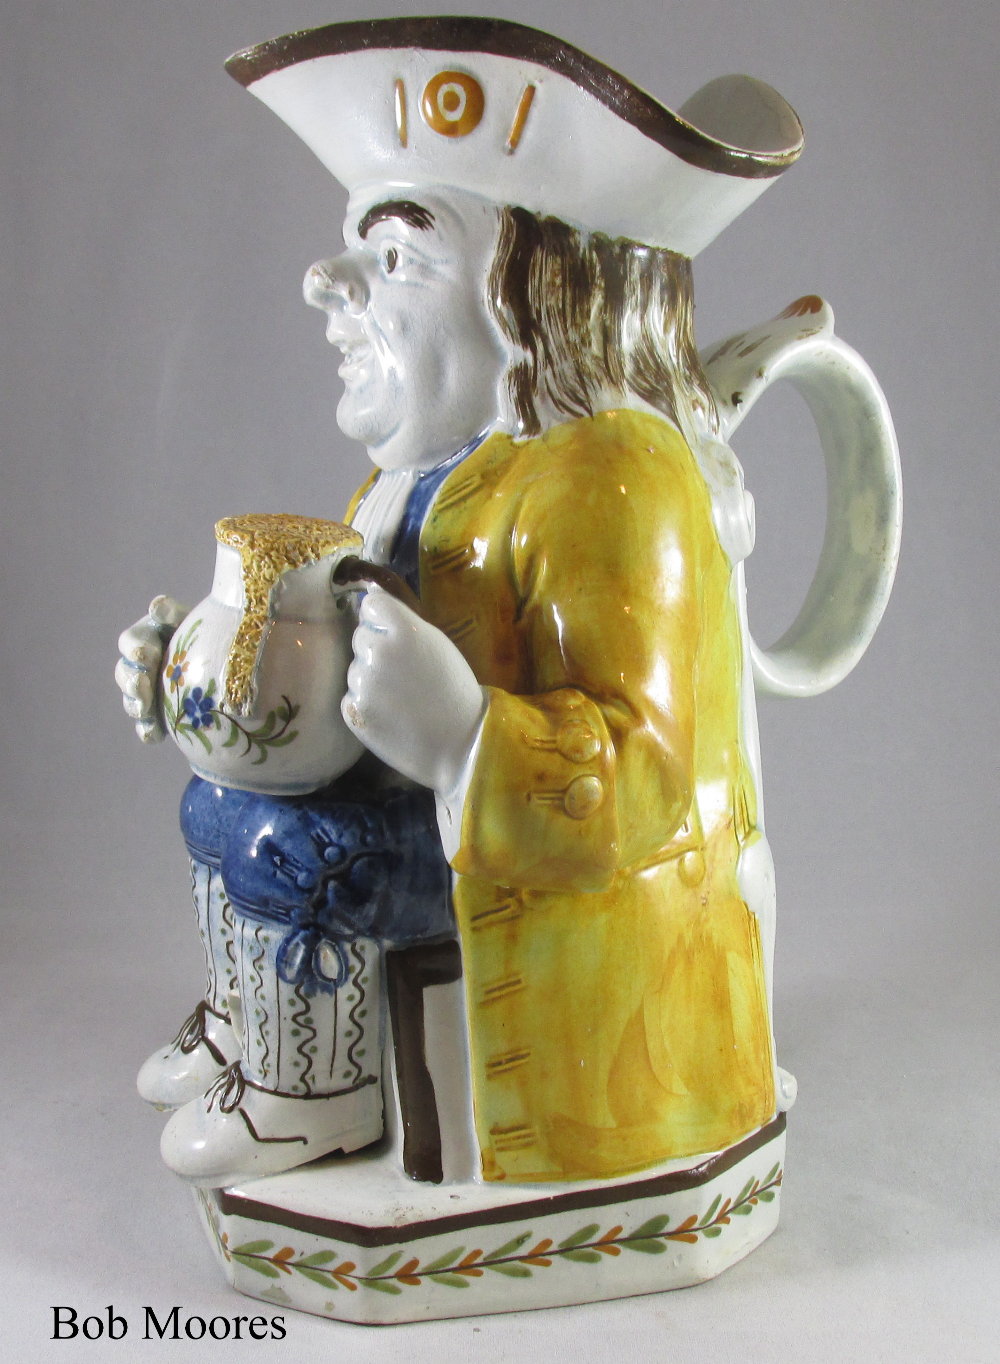 18th century English Antique Pottery – Creamware, Pearlware, Delft, Staffordshire